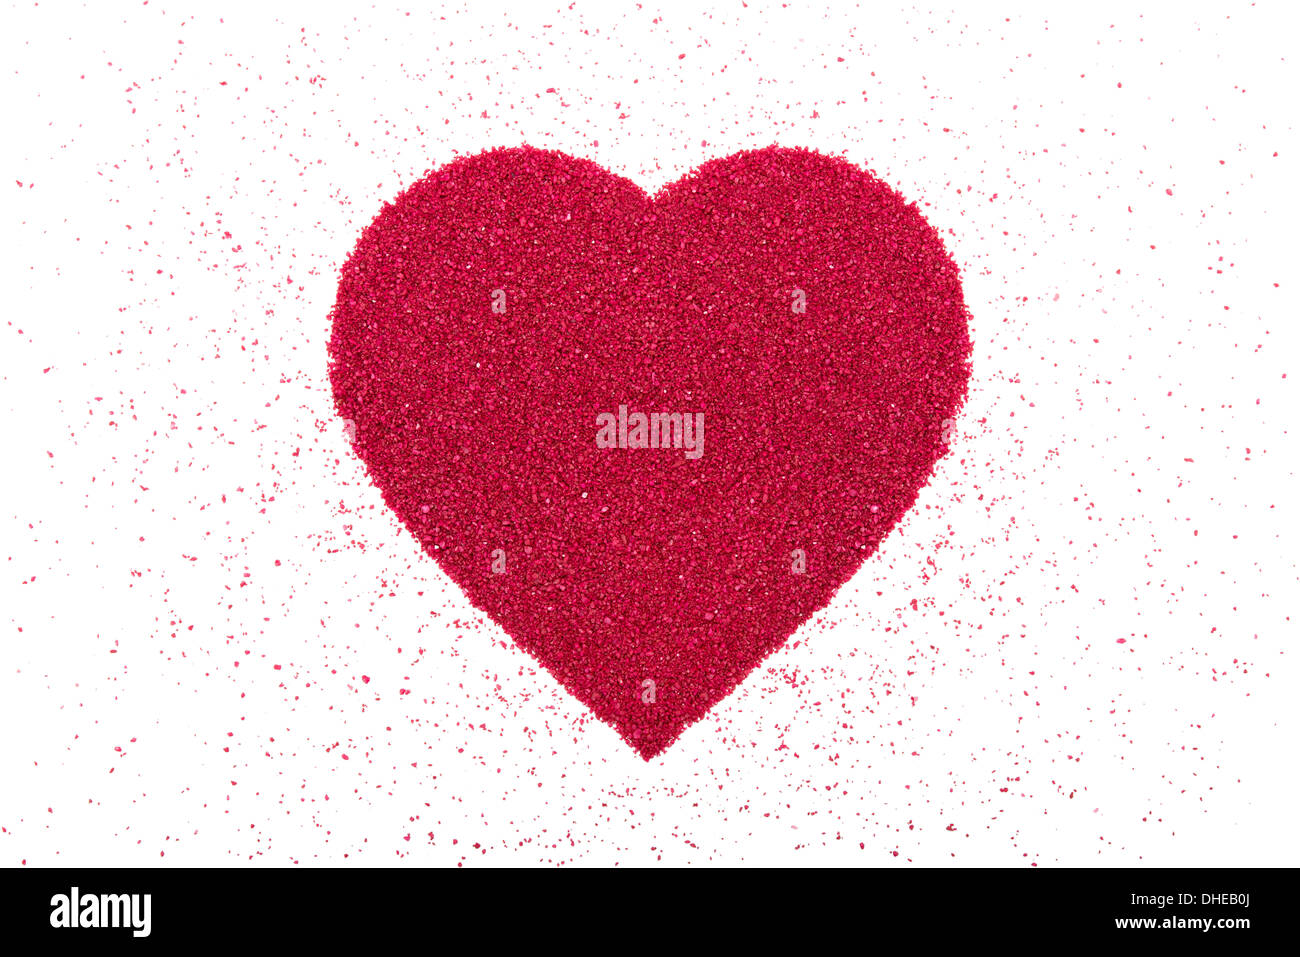 Herz des dekorativen roten Sand ist auf einem weißen Hintergrund. Stockfoto